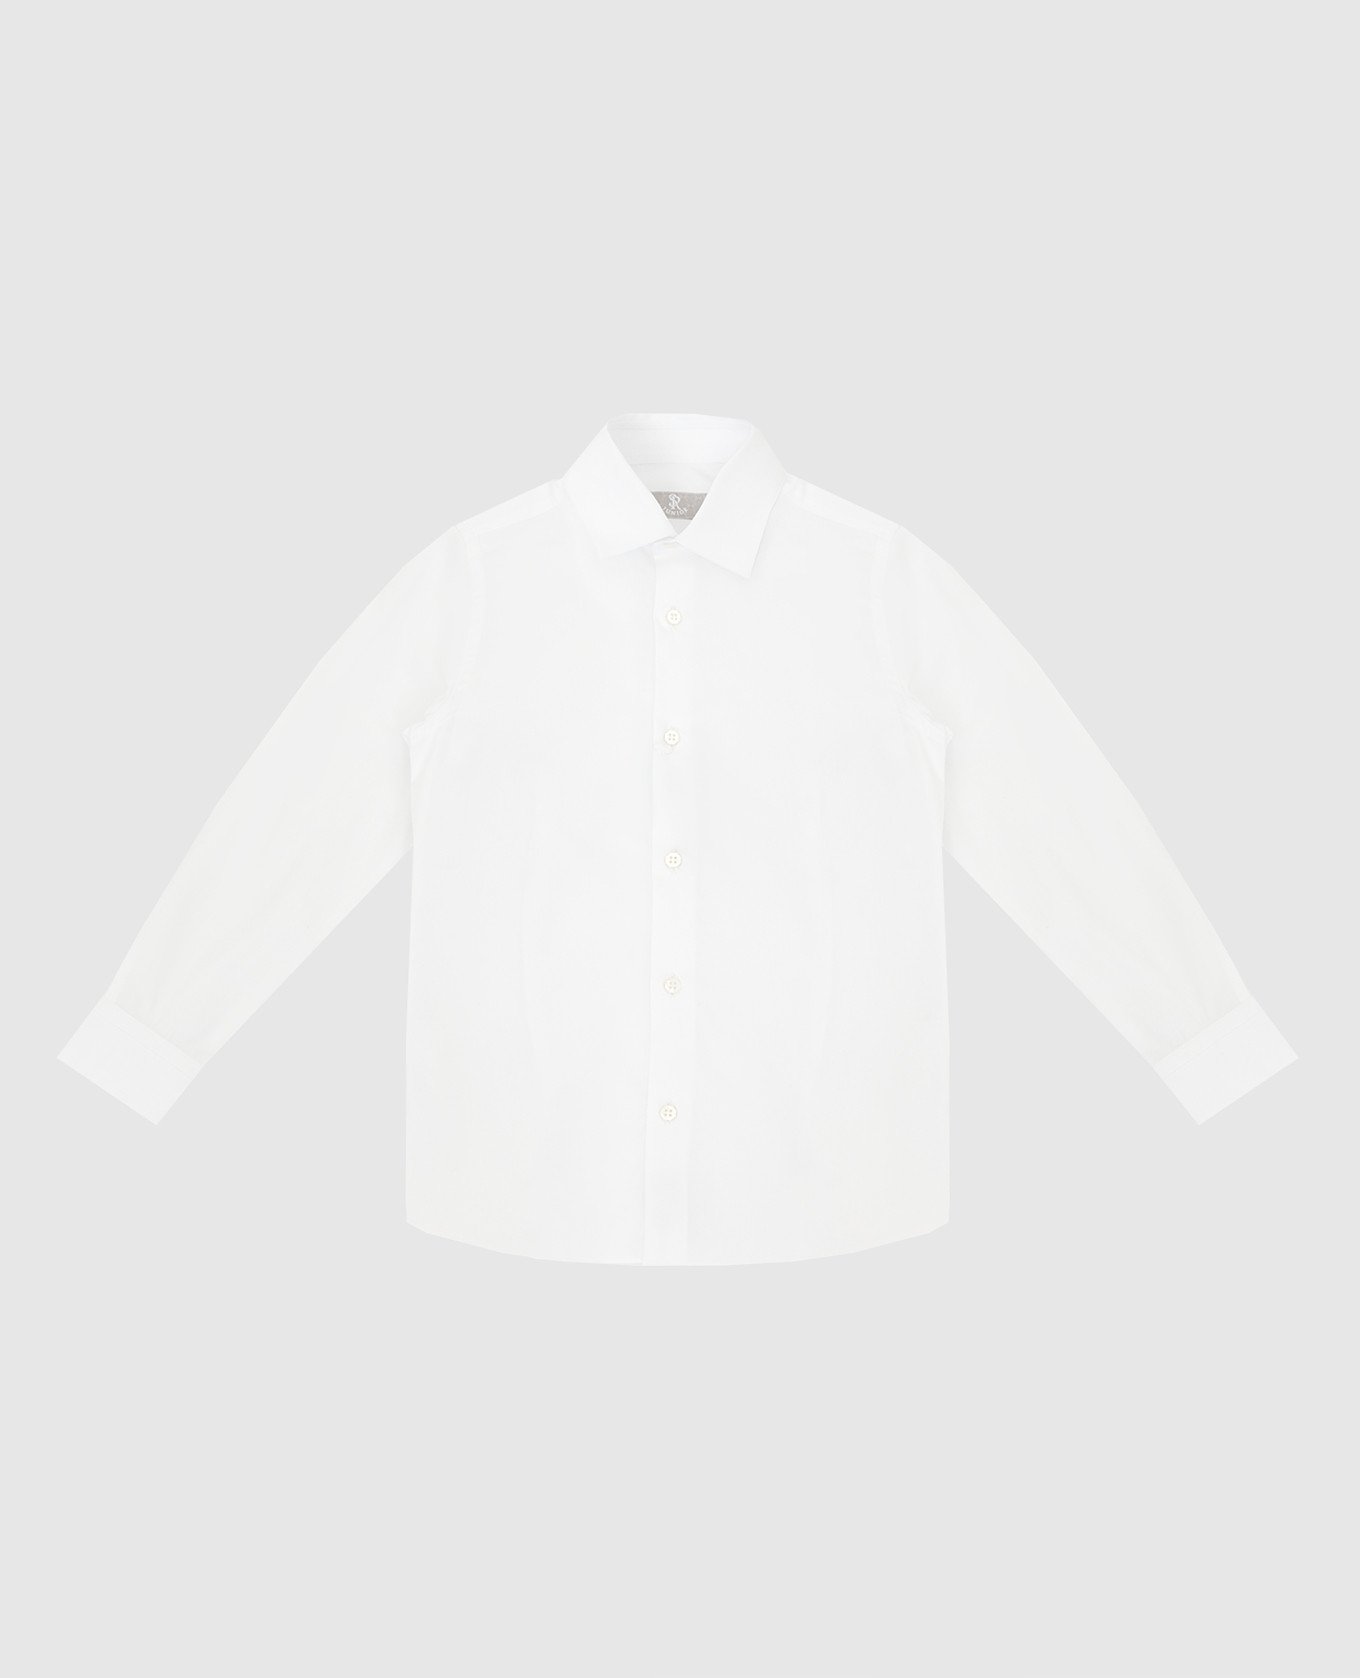 Children's white shirt